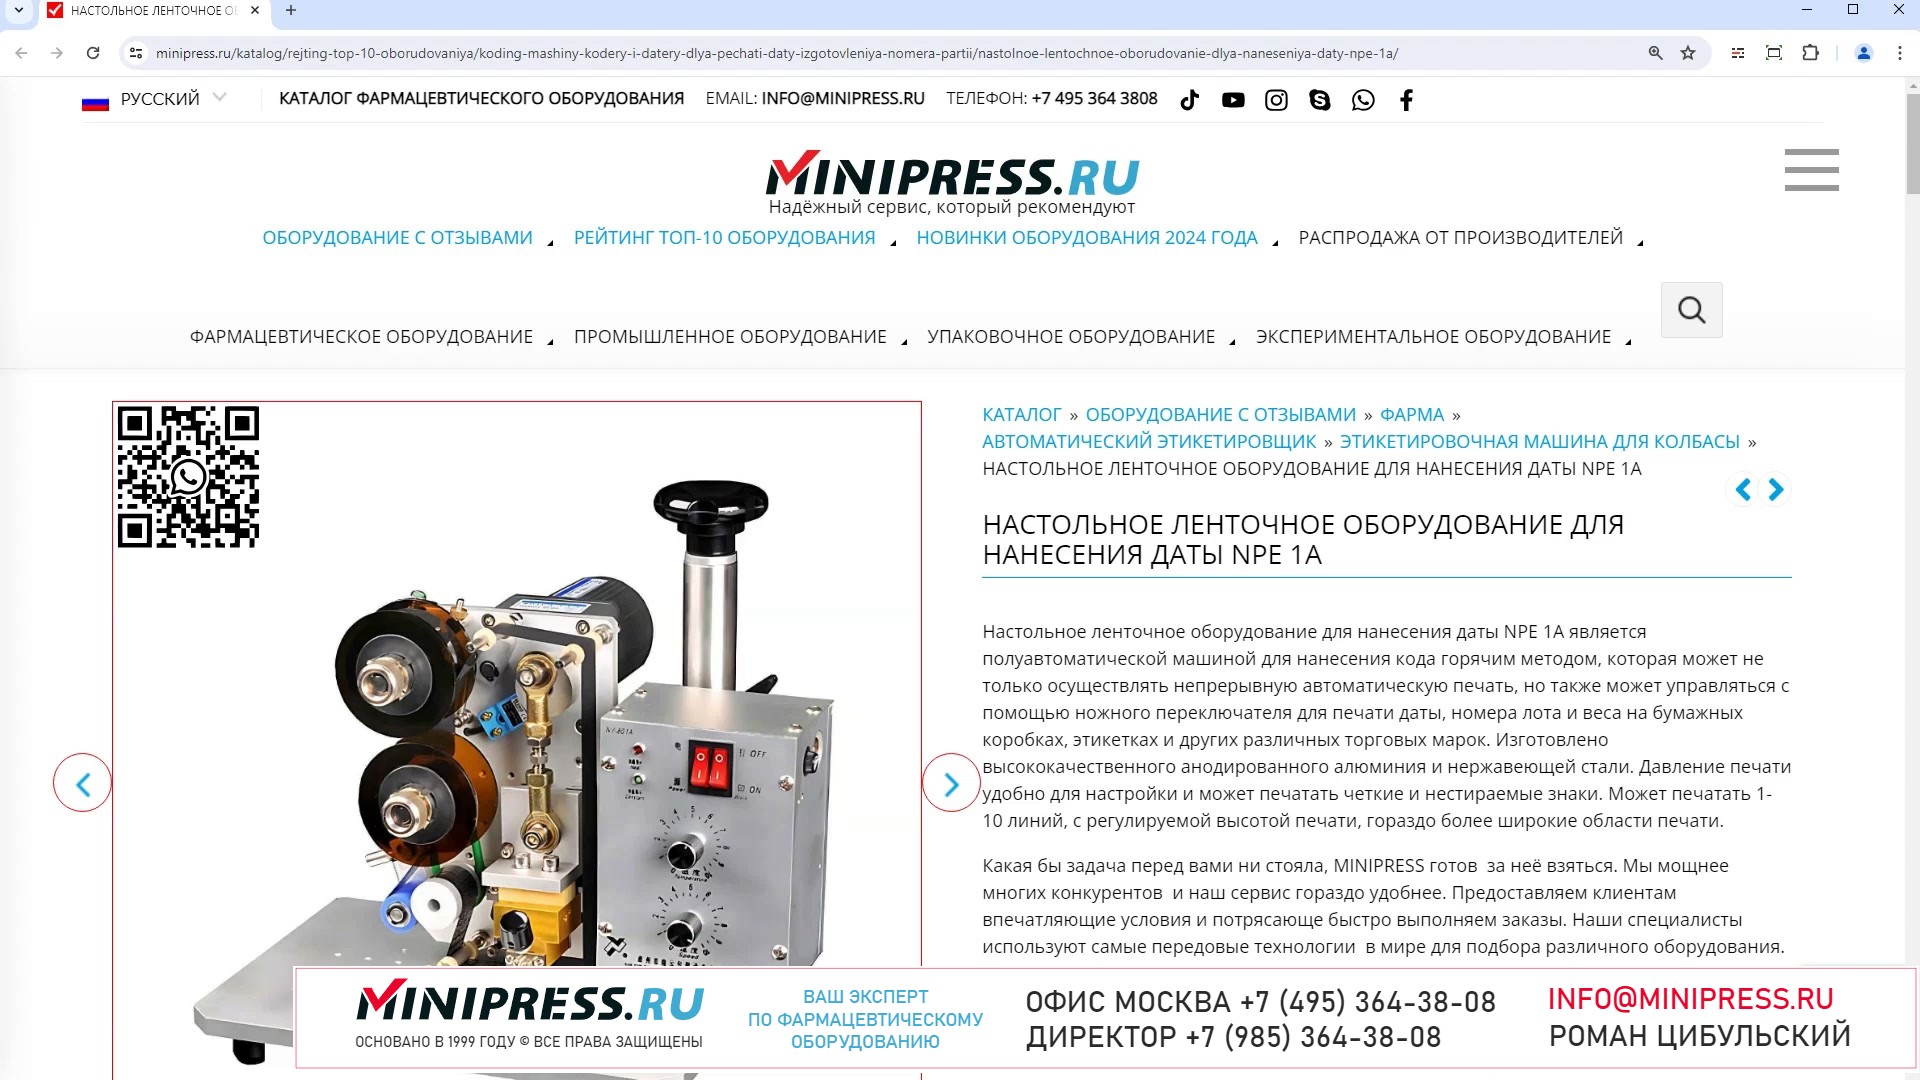 Minipress.ru Настольное ленточное оборудование для нанесения даты NPE 1A